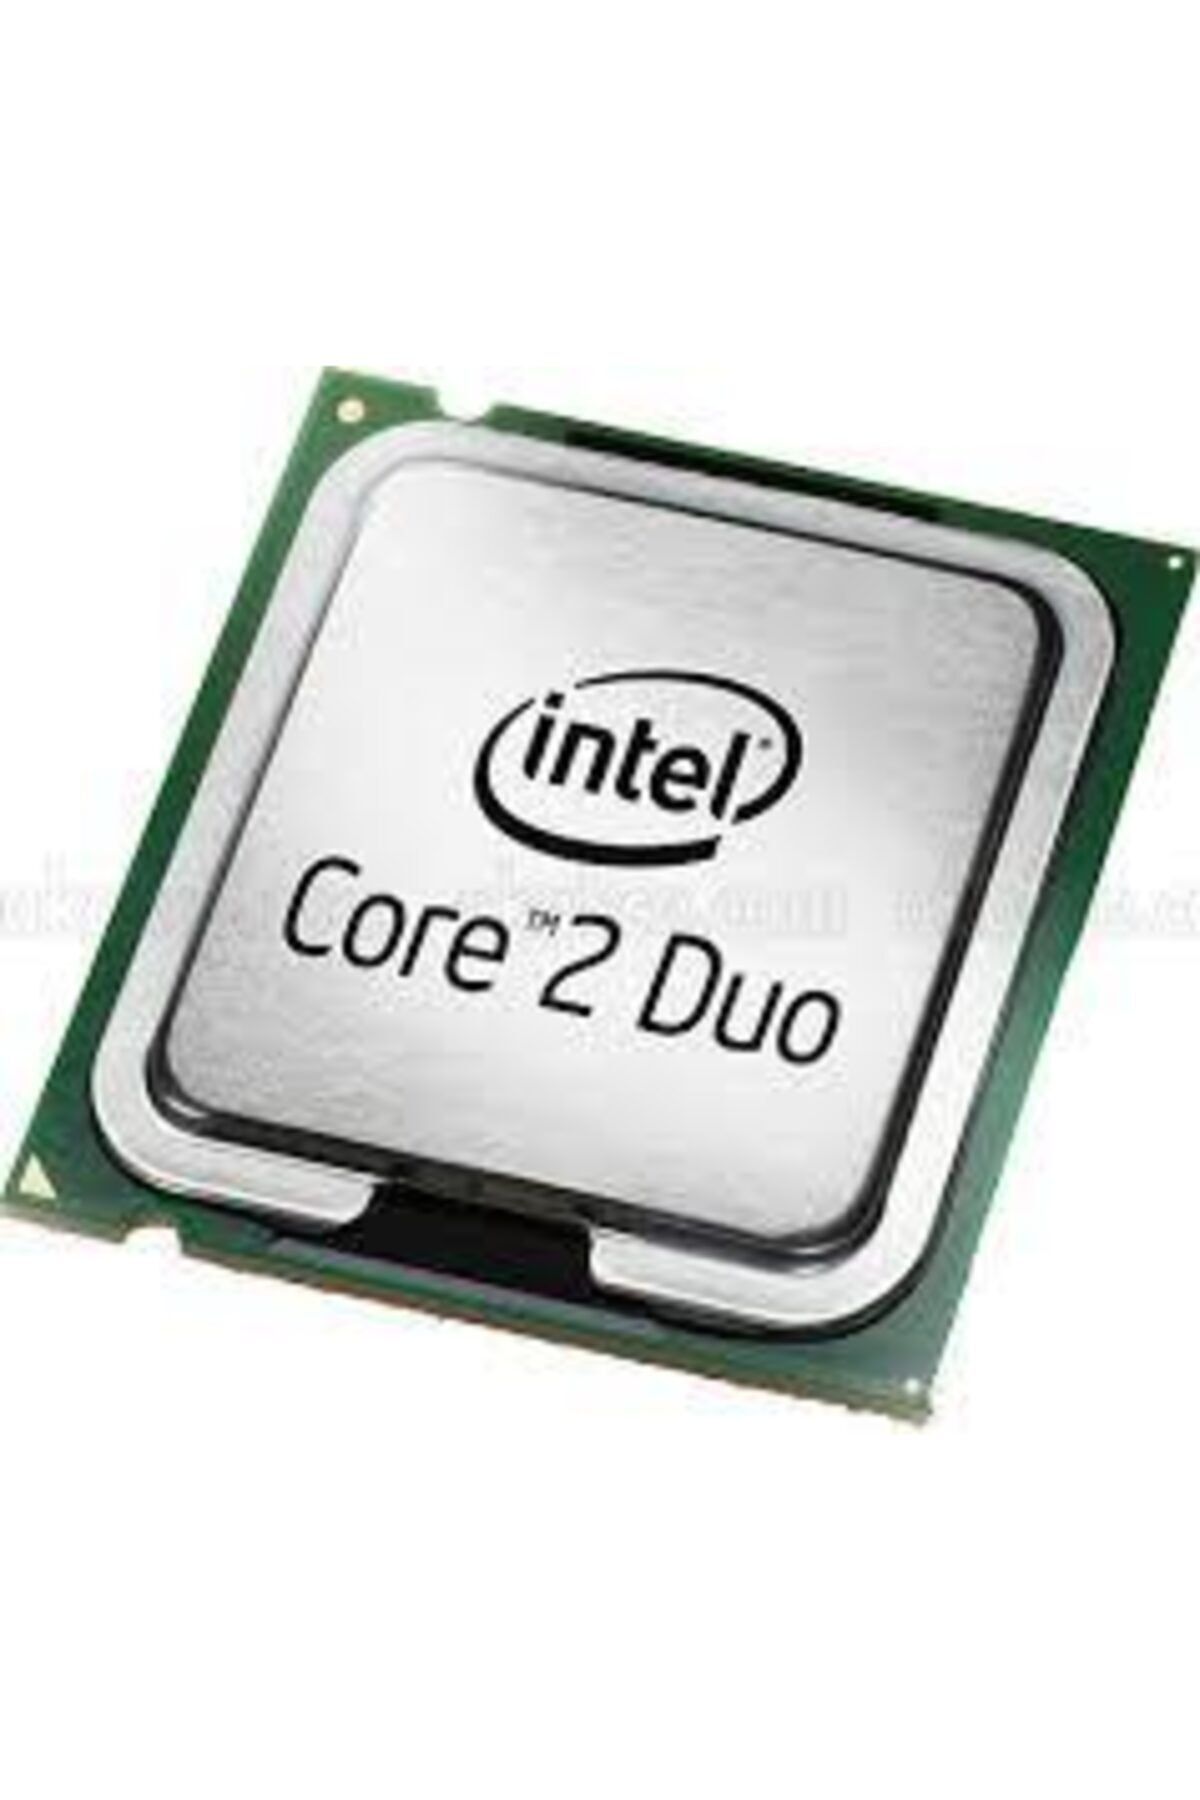 Intel Core2 Duo E7300 Tray Cpu 775pin 2.66ghz 3mb Dual Core